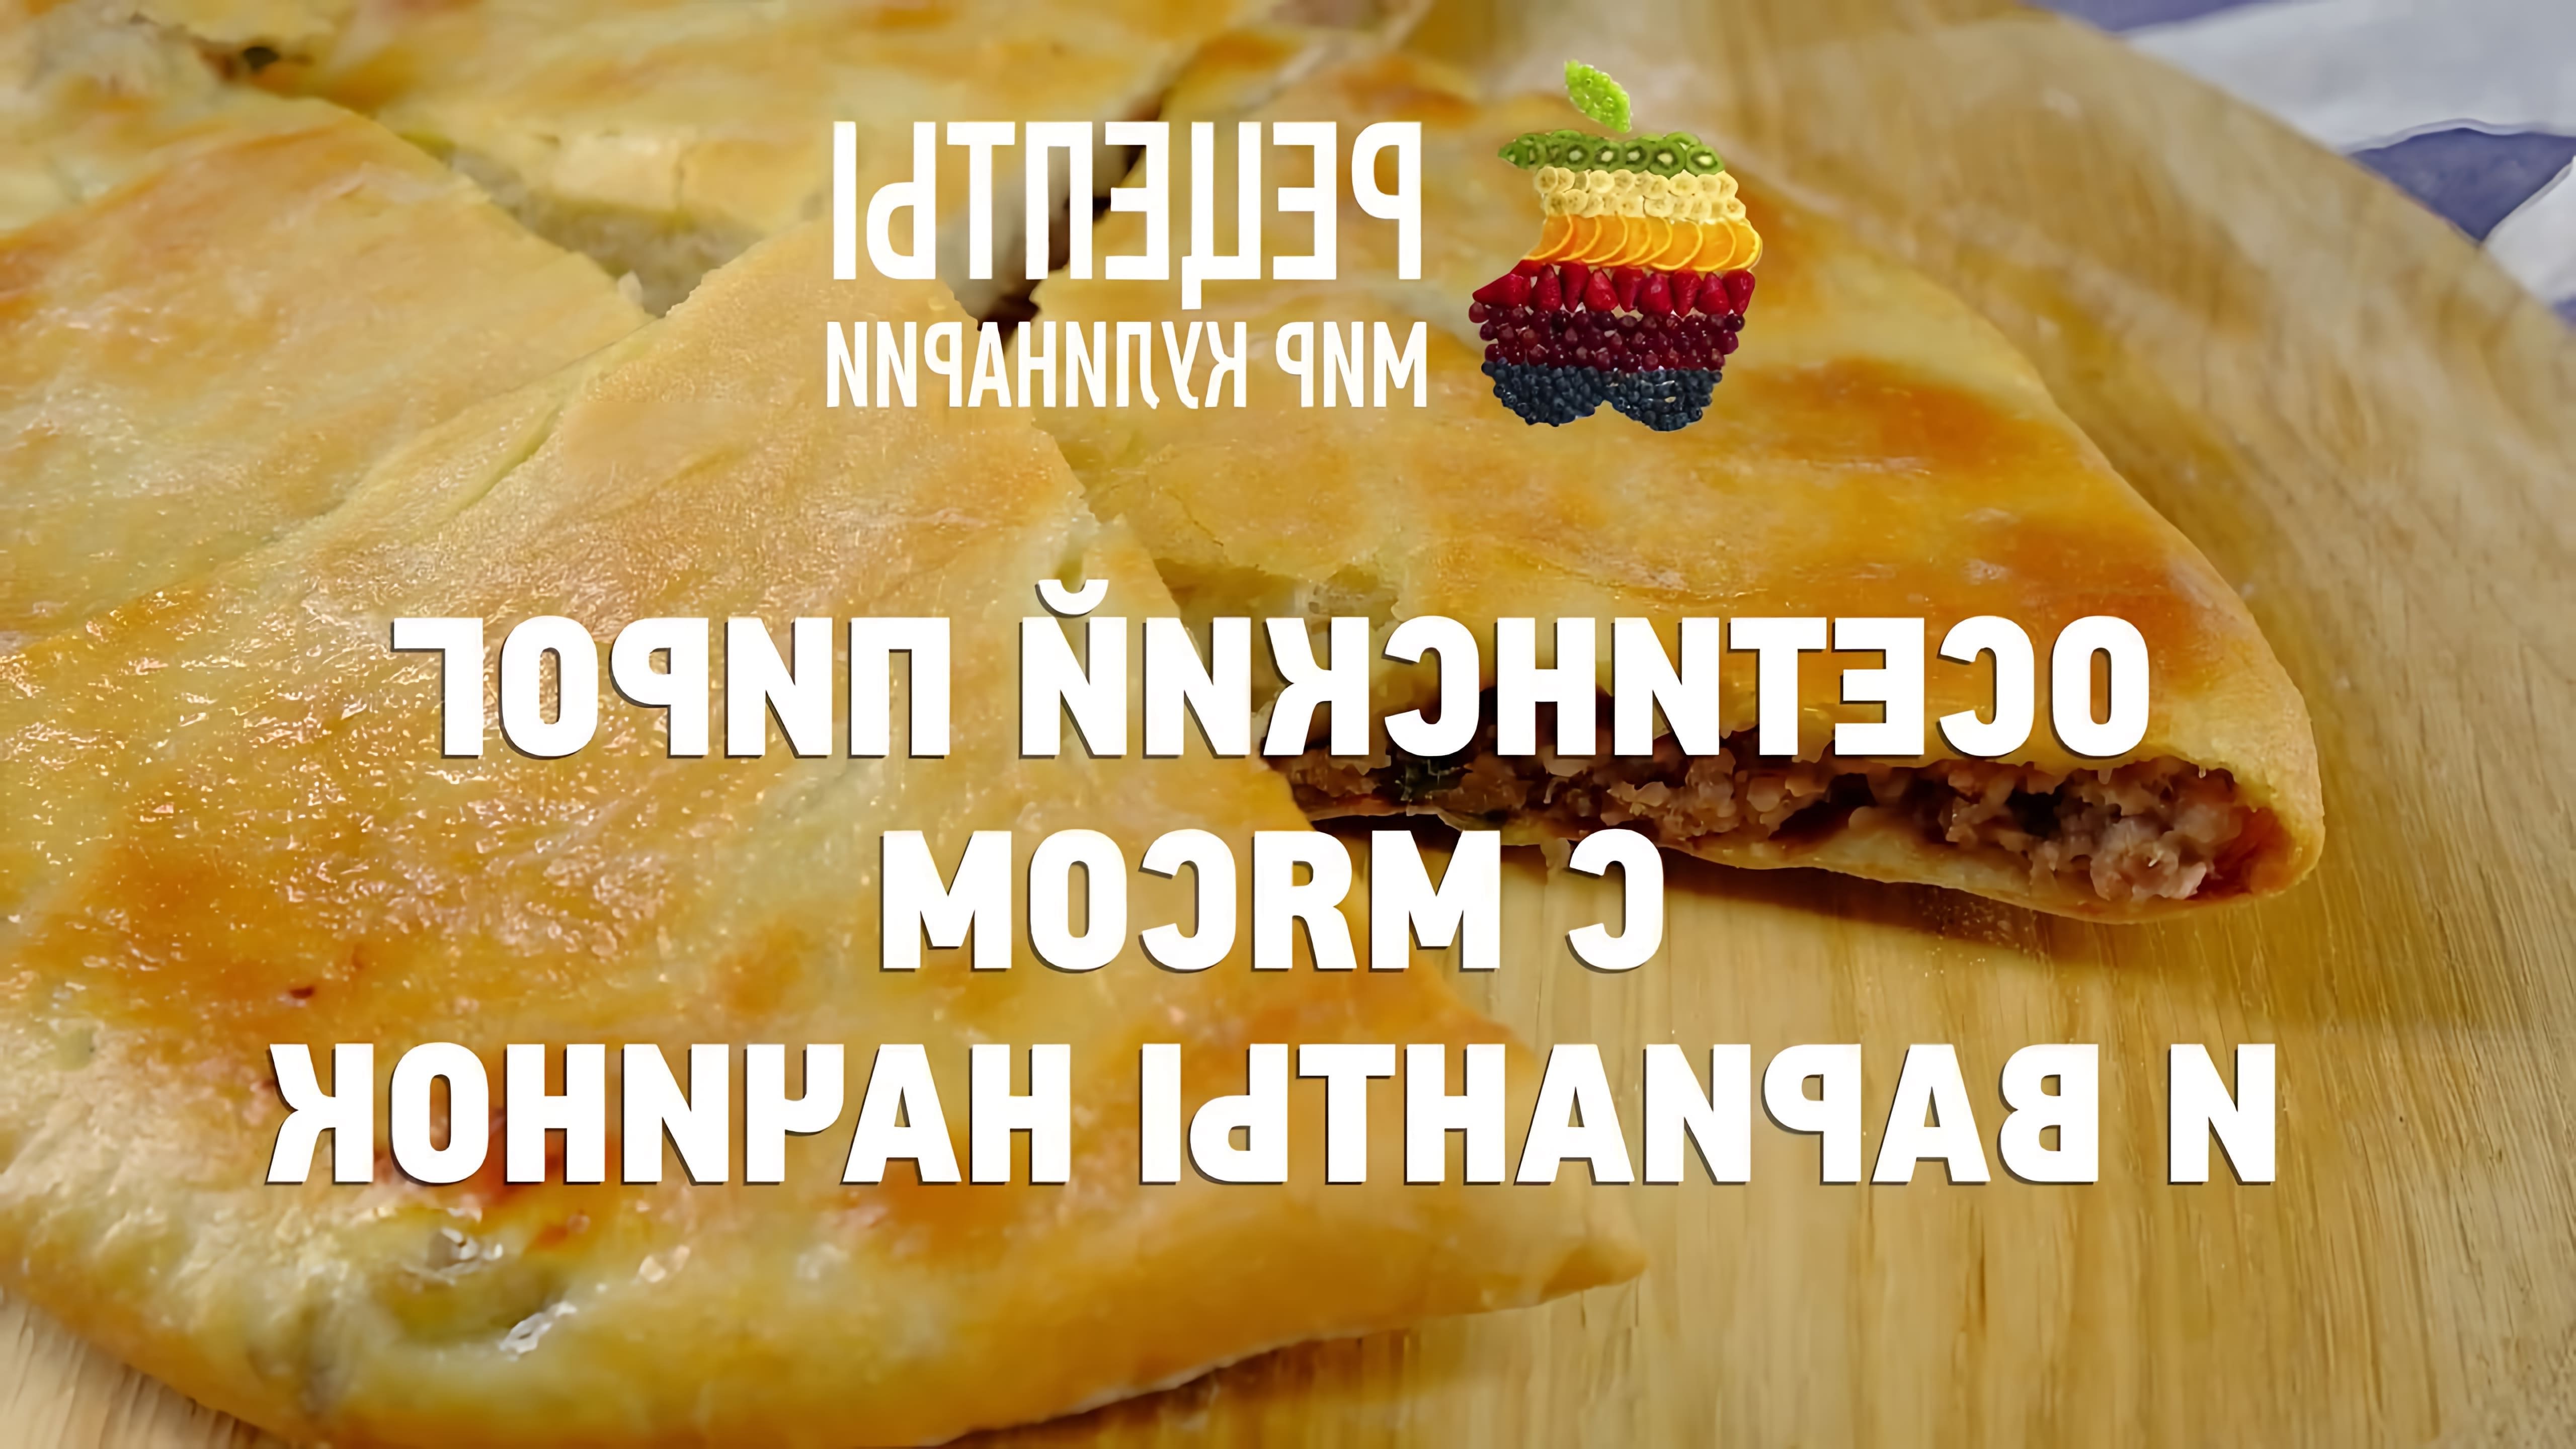 Осетинский пирог с мясом и варианты начинок - это видео-ролик, который рассказывает о традиционном блюде Осетии - осетинском пироге